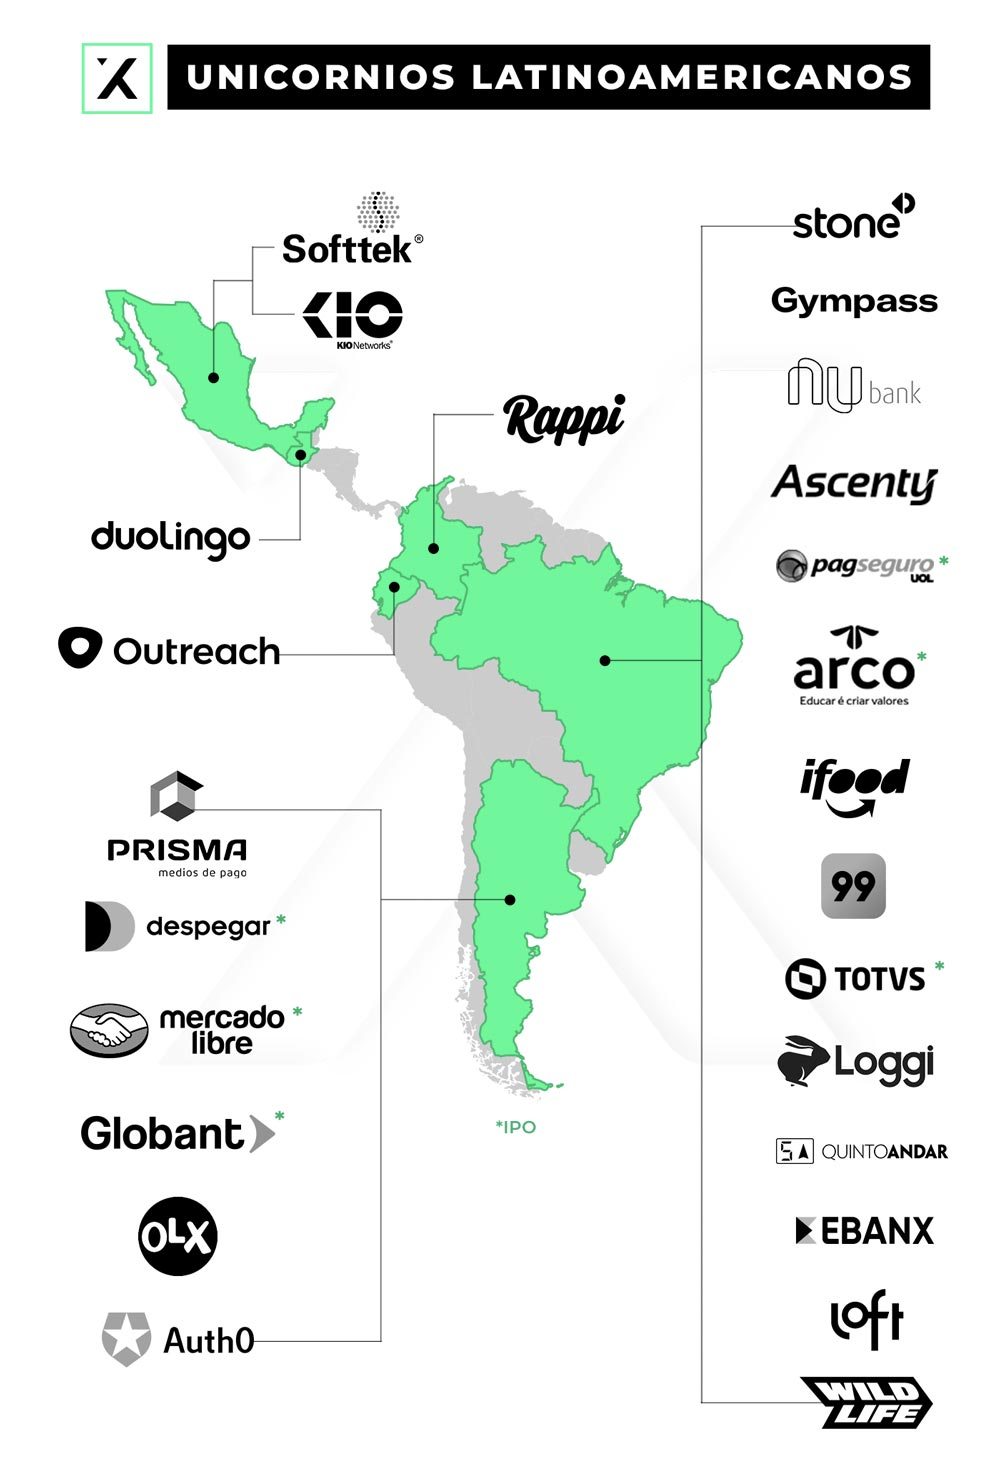 Los 21 unicornios latinoamericanos galopando hacia el éxito